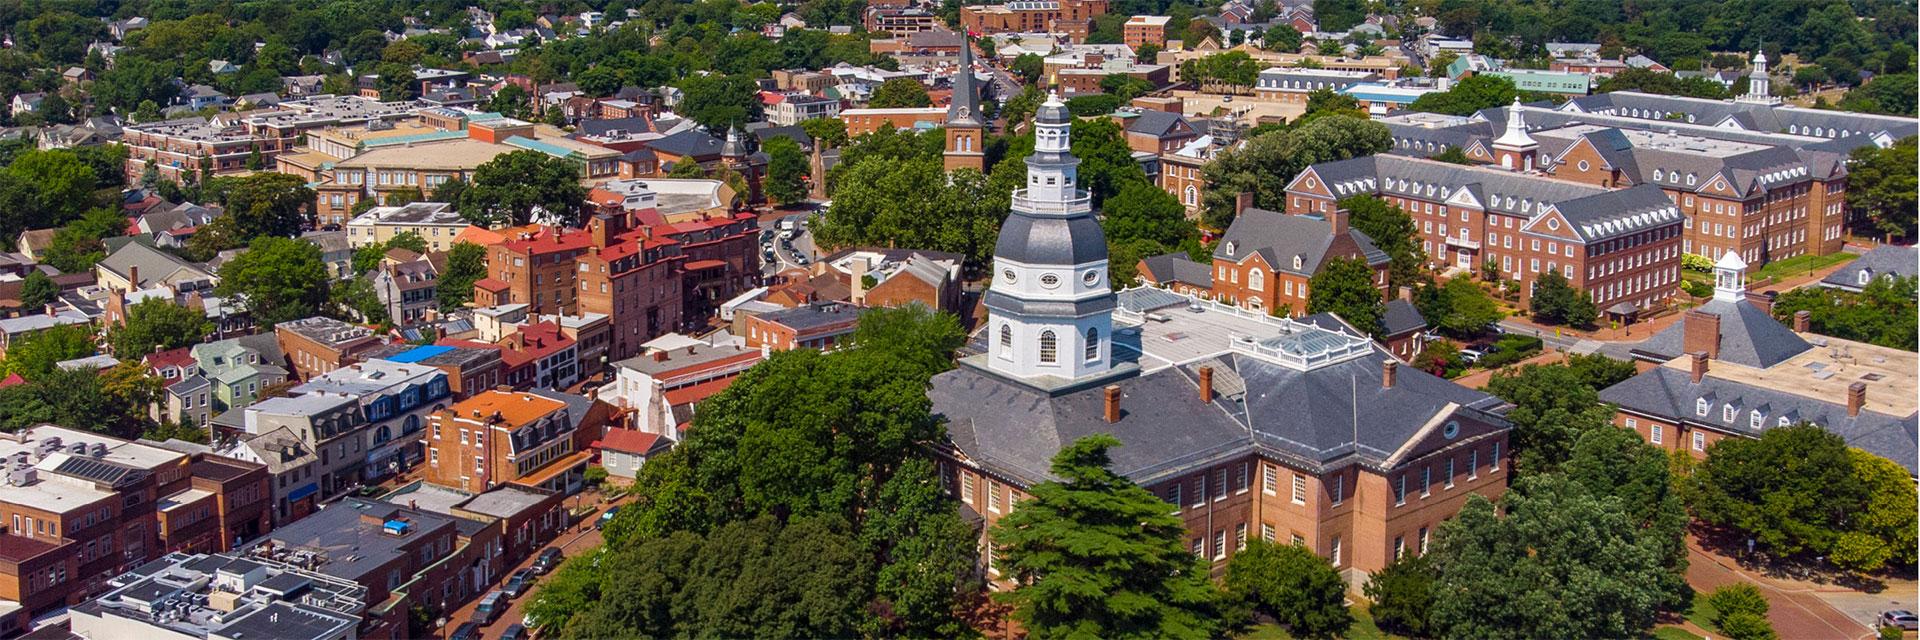 Maryland Statehouse Aerial photo